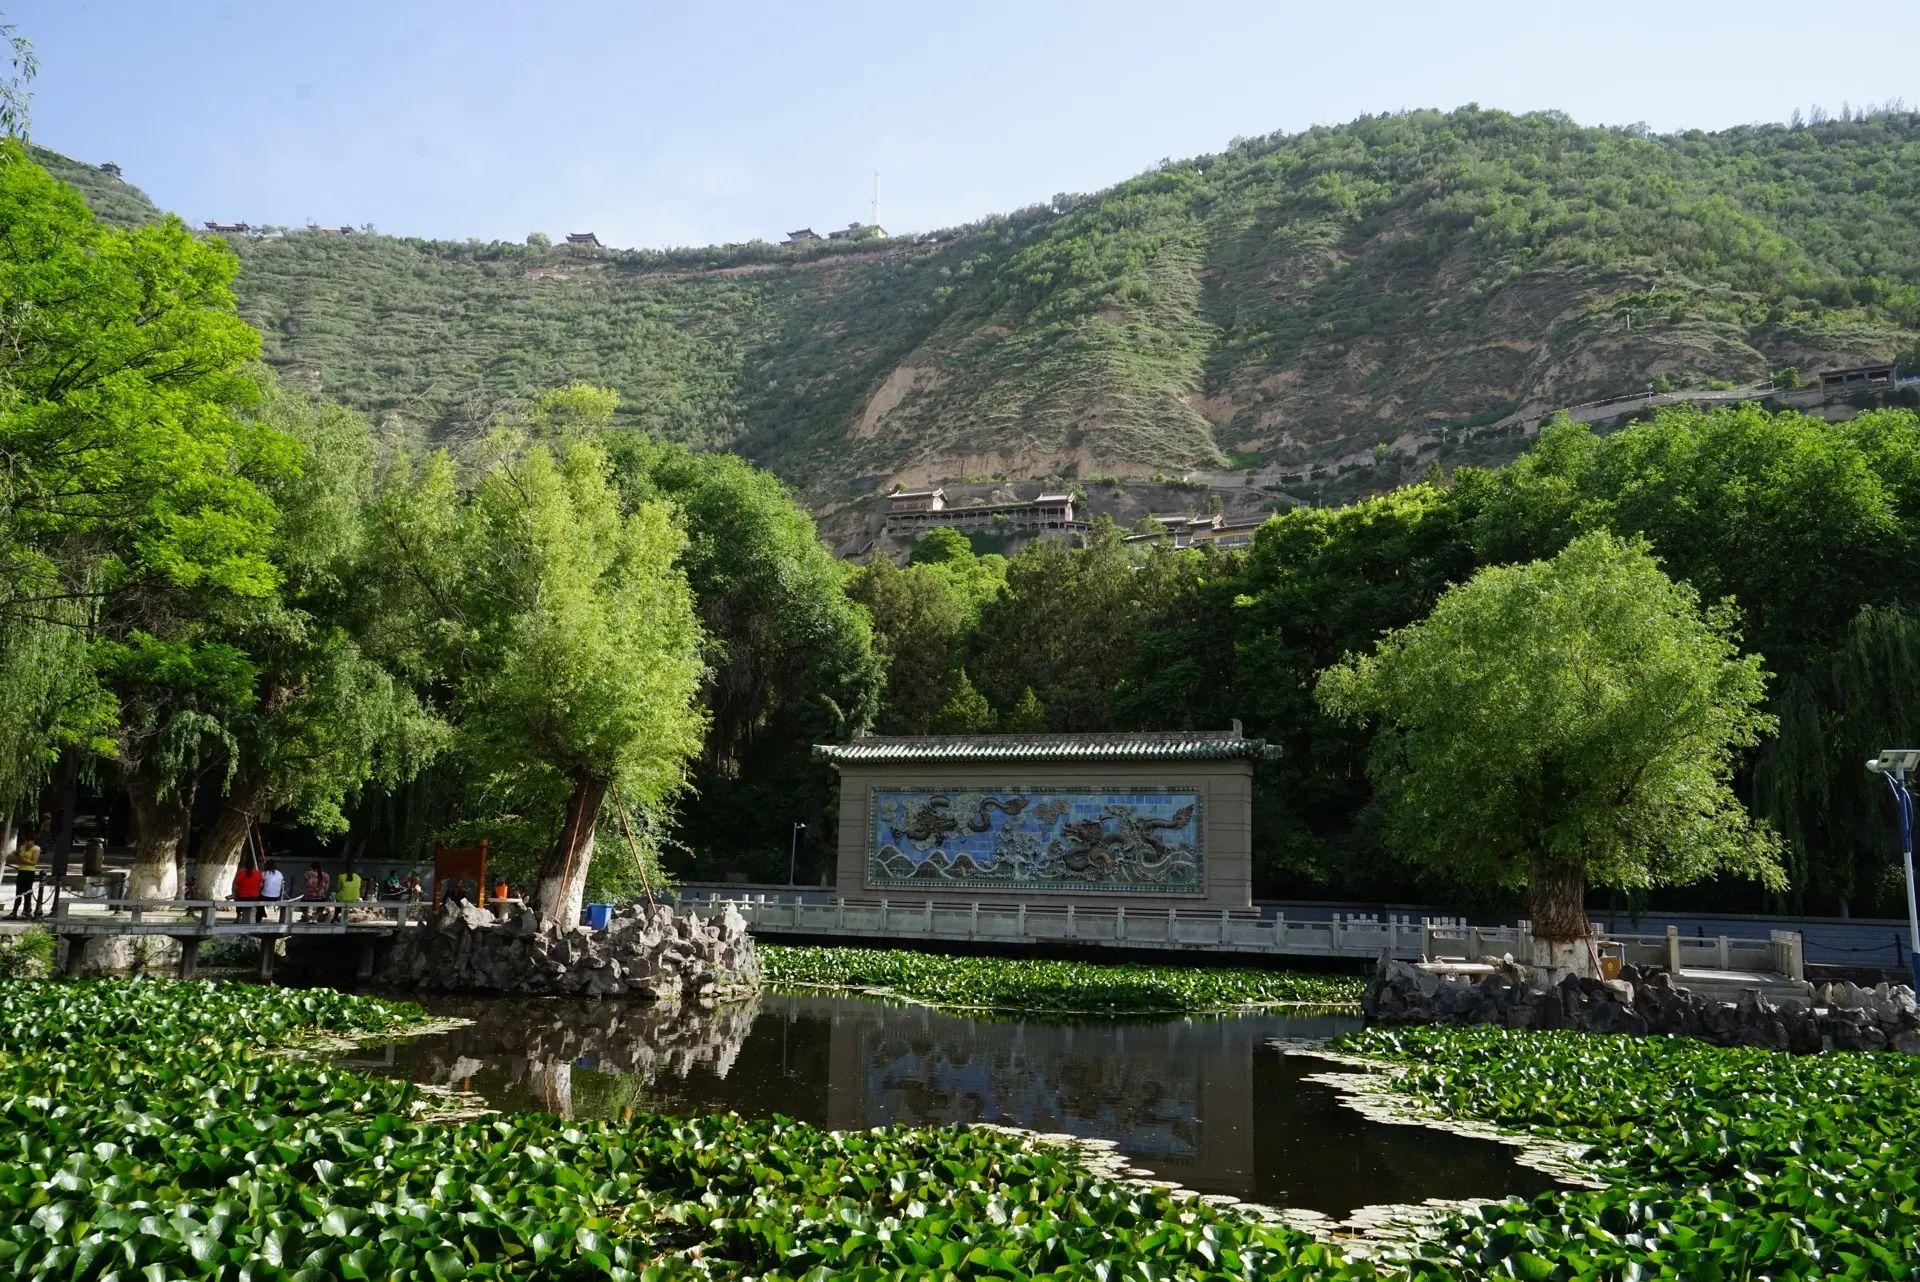 甘肃五月份旅游景点推荐 五泉山公园旅游攻略 免费语音导游 